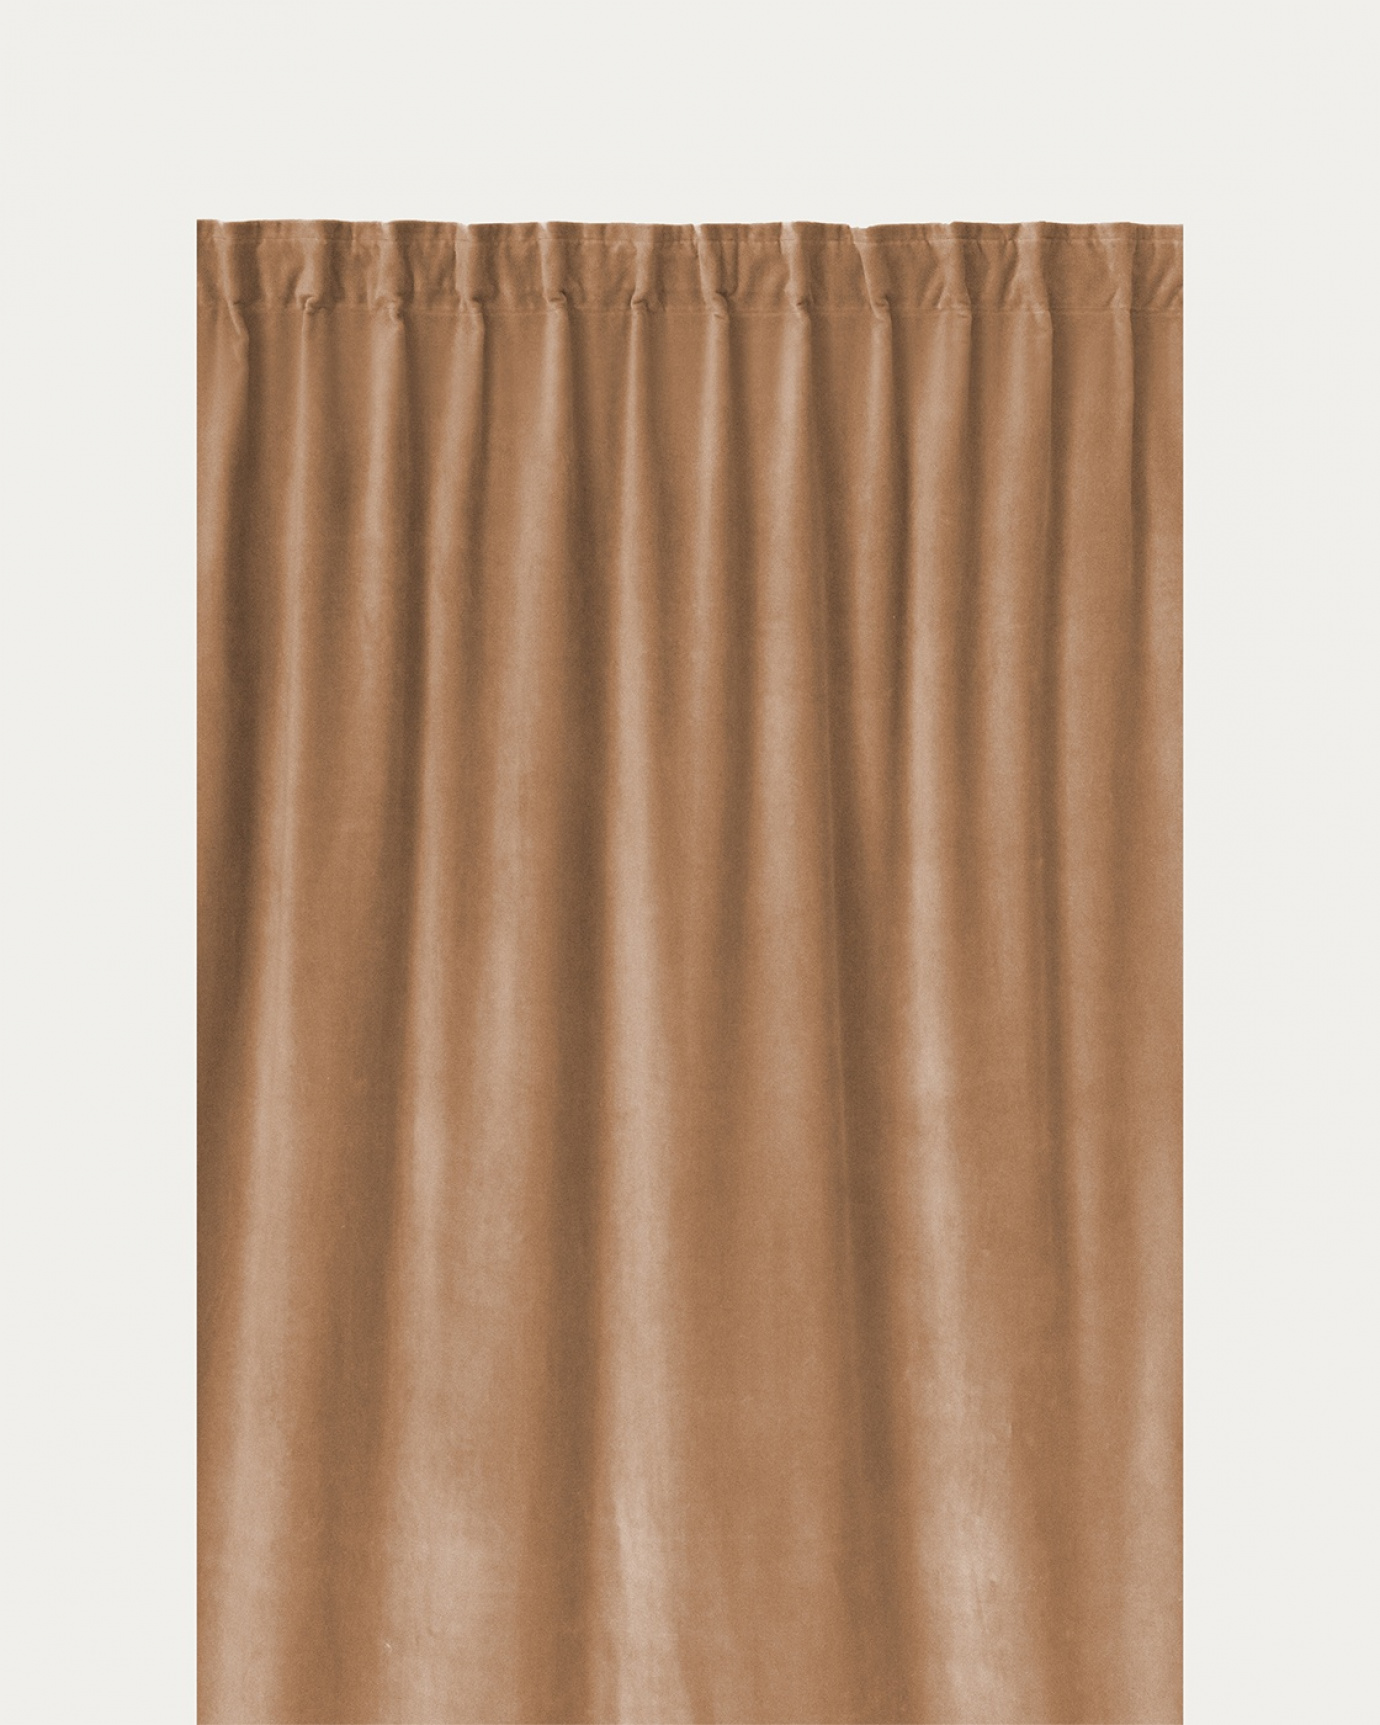 Immagine prodotto marrone cammello PAOLO tenda panna in velluto di cotone con nastro plissettato rifinito di LINUM DESIGN. Dimensioni 135x290 cm e venduto in 2-pezzi.